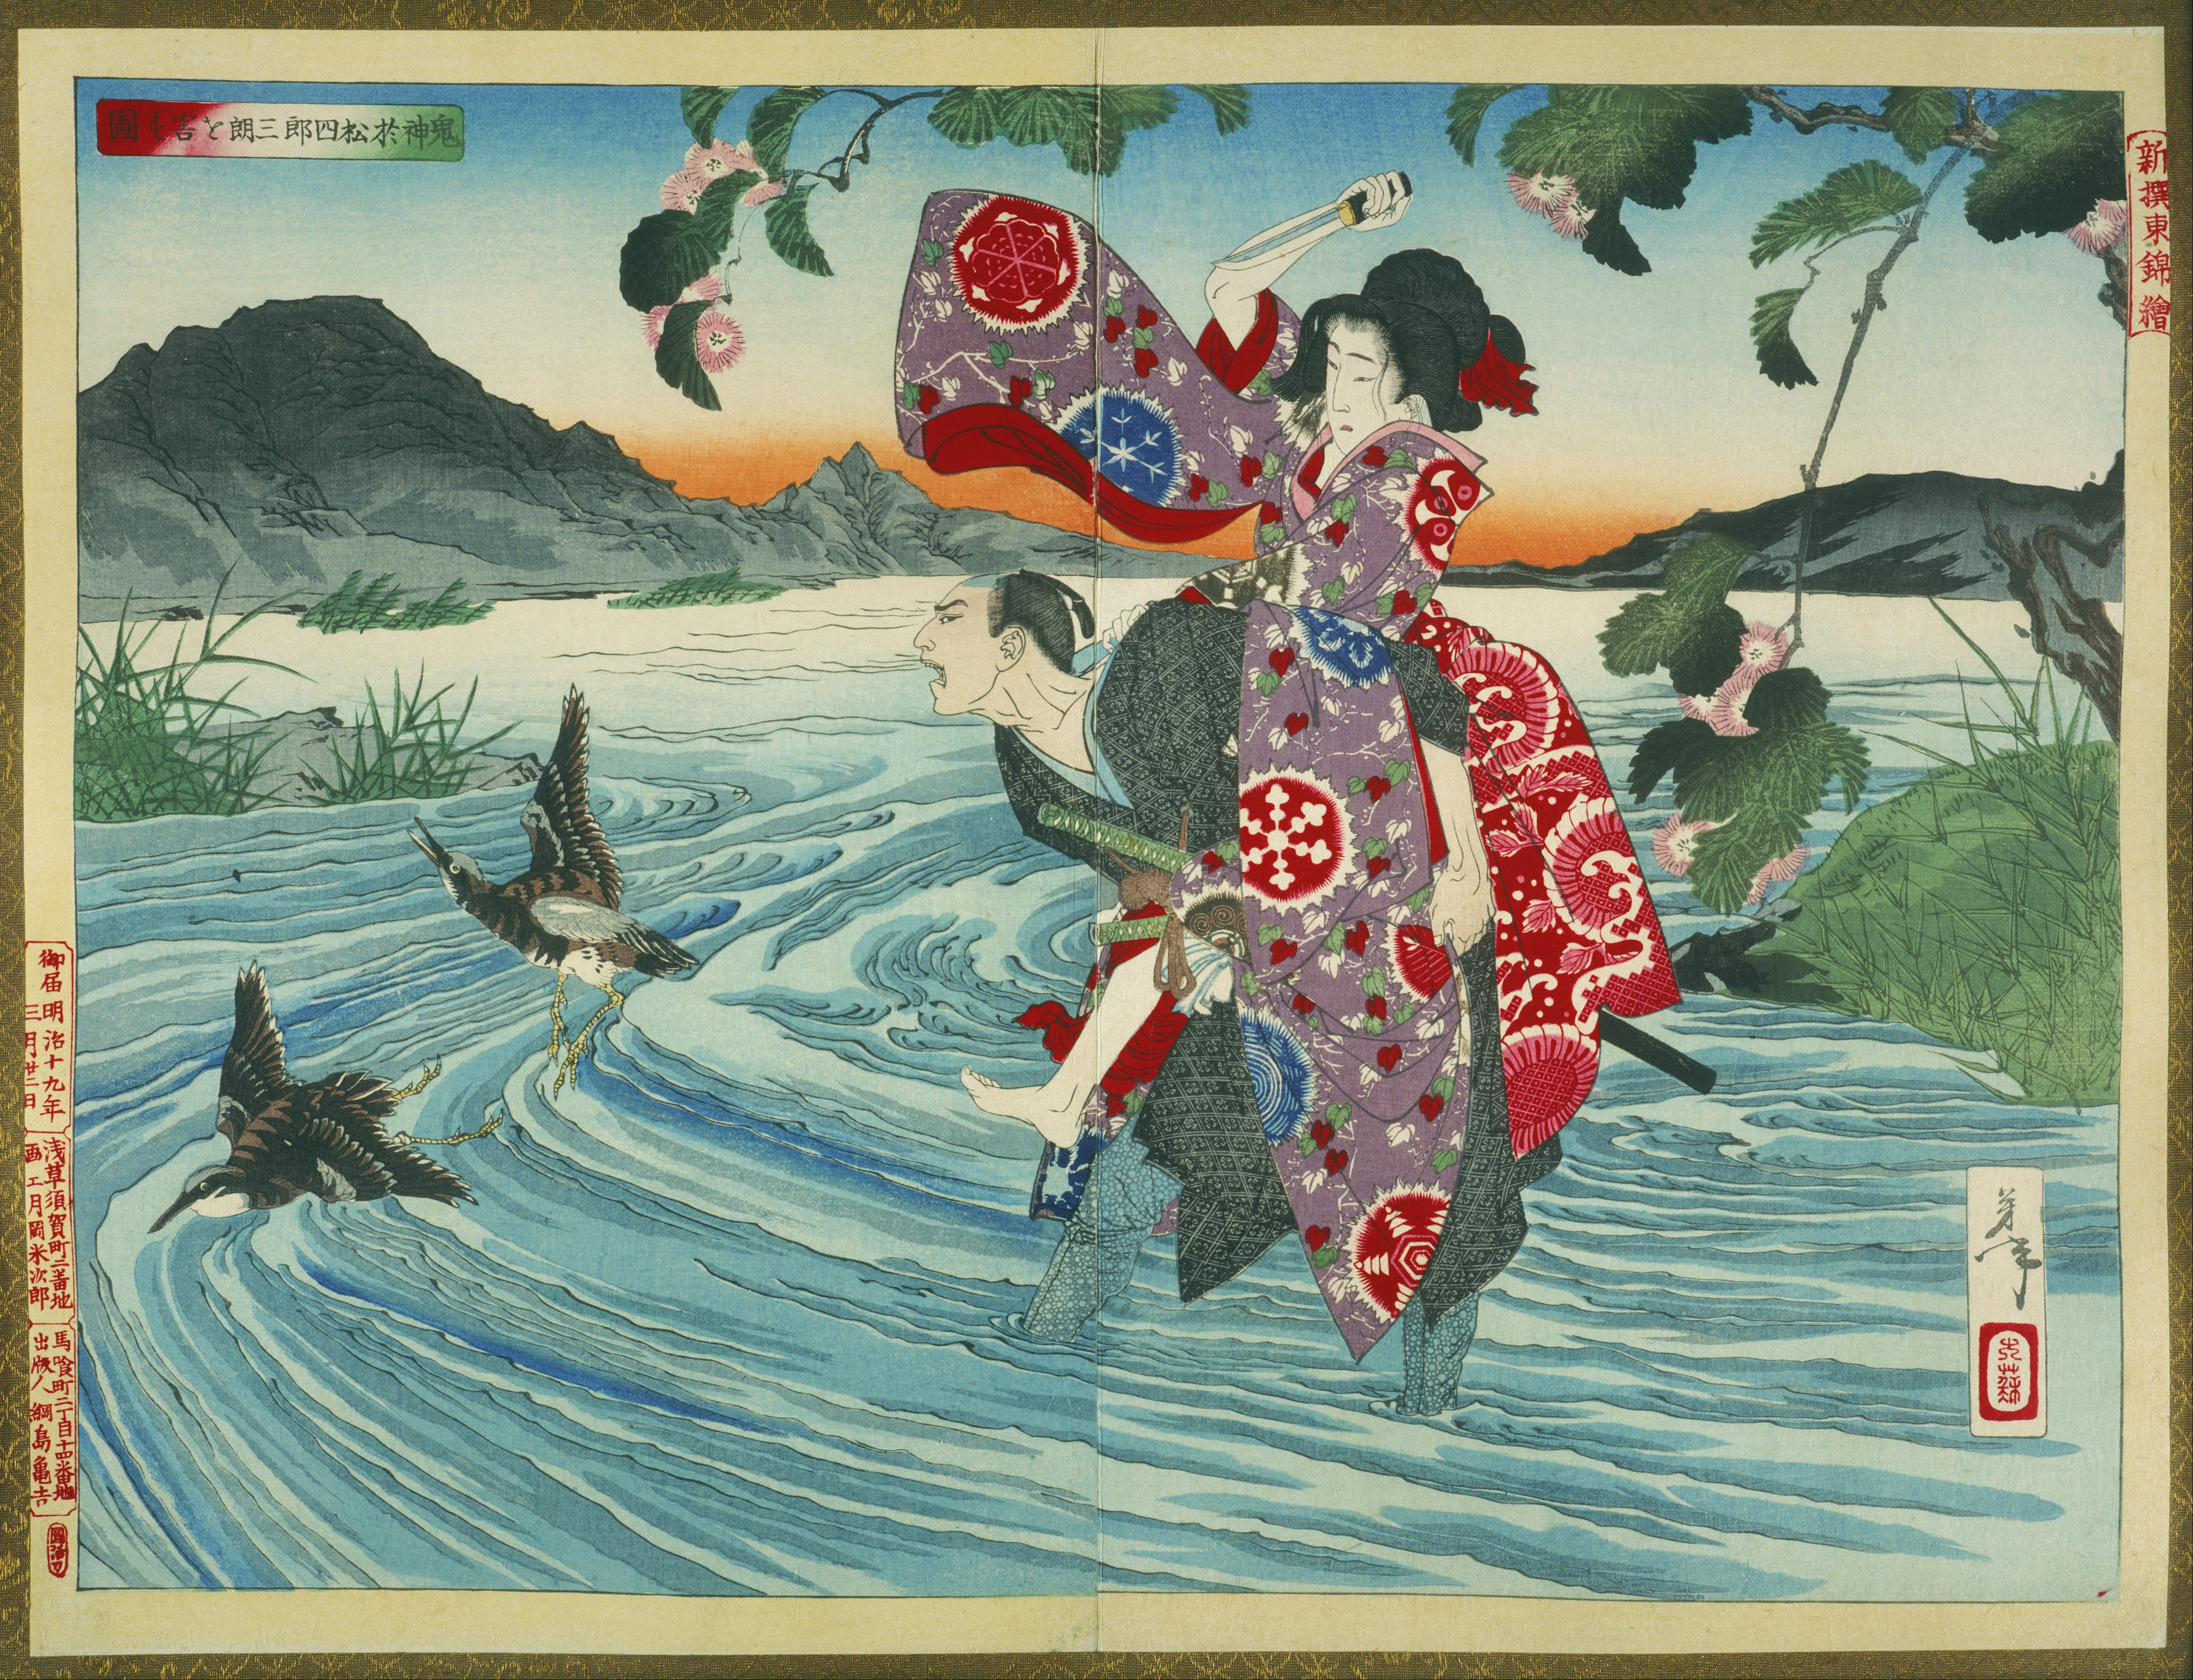 El demonio Omatsu asesina a Shirosaburō in el vado by Tsukioka Yoshitoshi - 1885 - 39,39 x 53,39 cm Colección privada